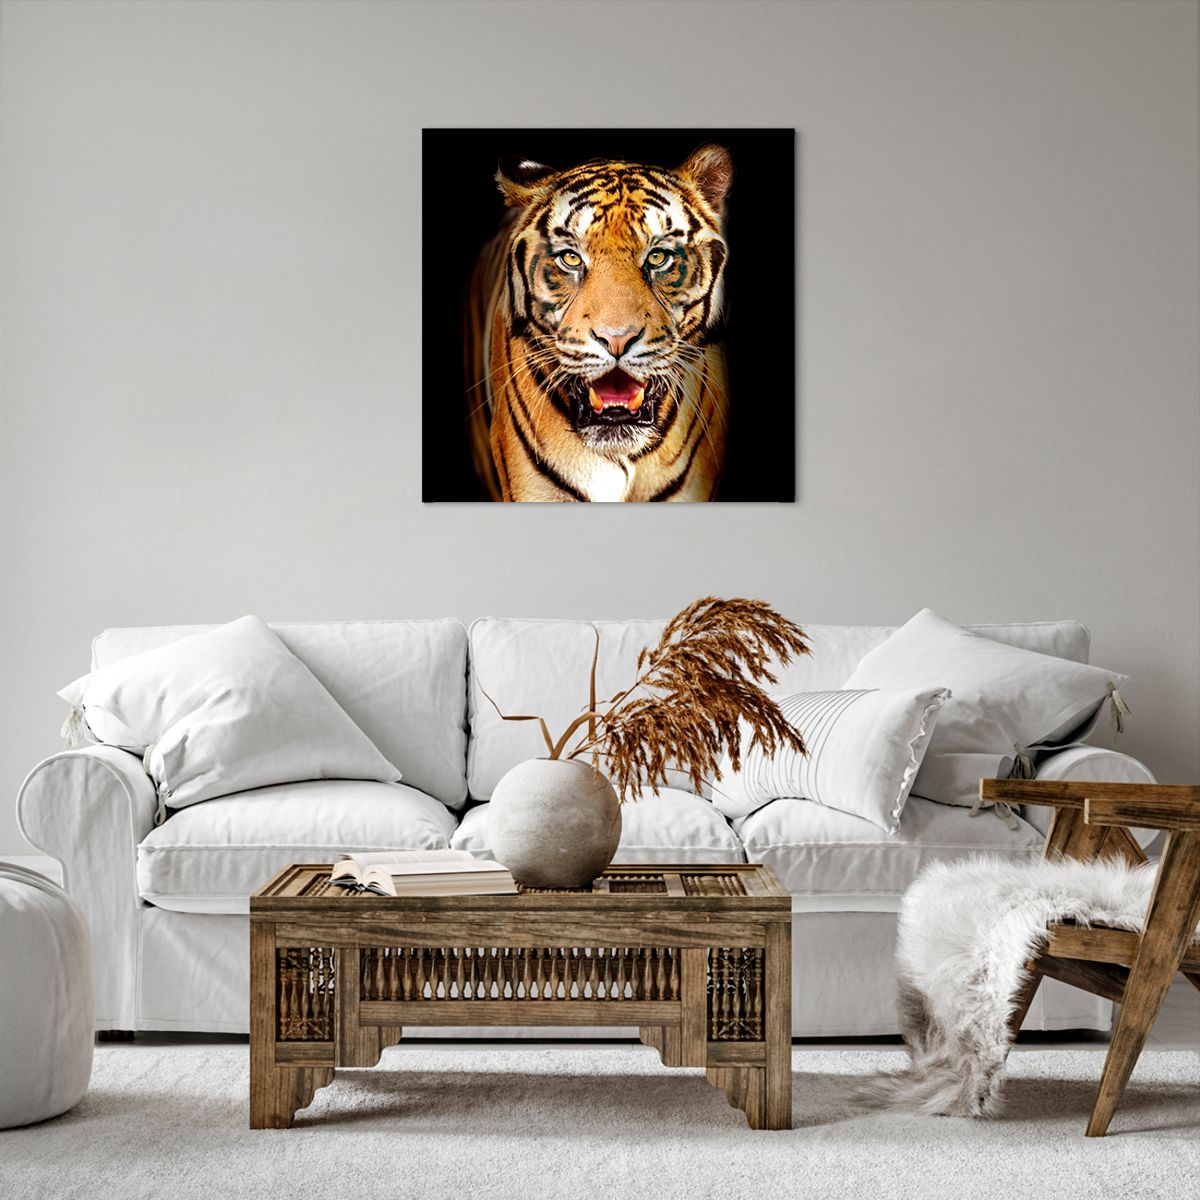 Obrazy na płótnie Zwierzęta, Obrazy na płótnie Tygrys, Obrazy na płótnie Drapieżnik, Obrazy na płótnie Safari, Obrazy na płótnie Afryka